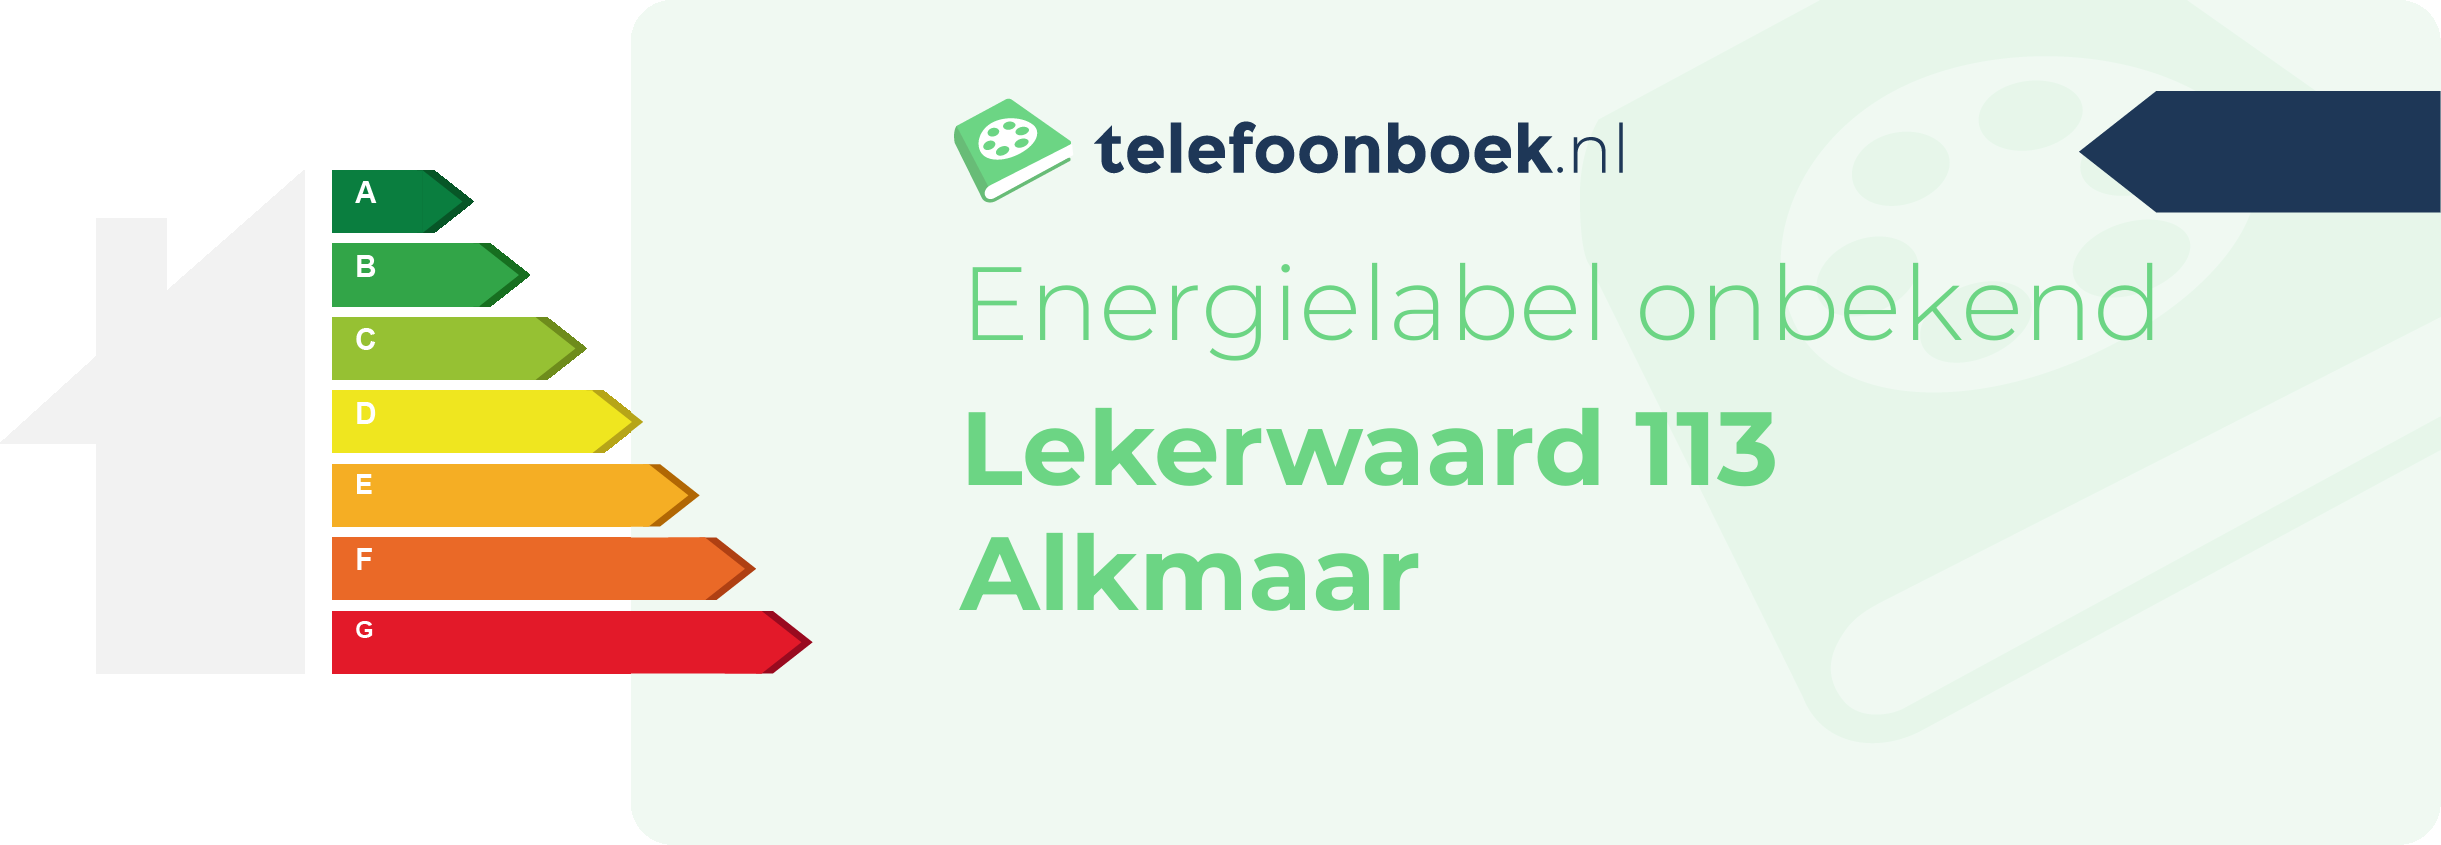 Energielabel Lekerwaard 113 Alkmaar